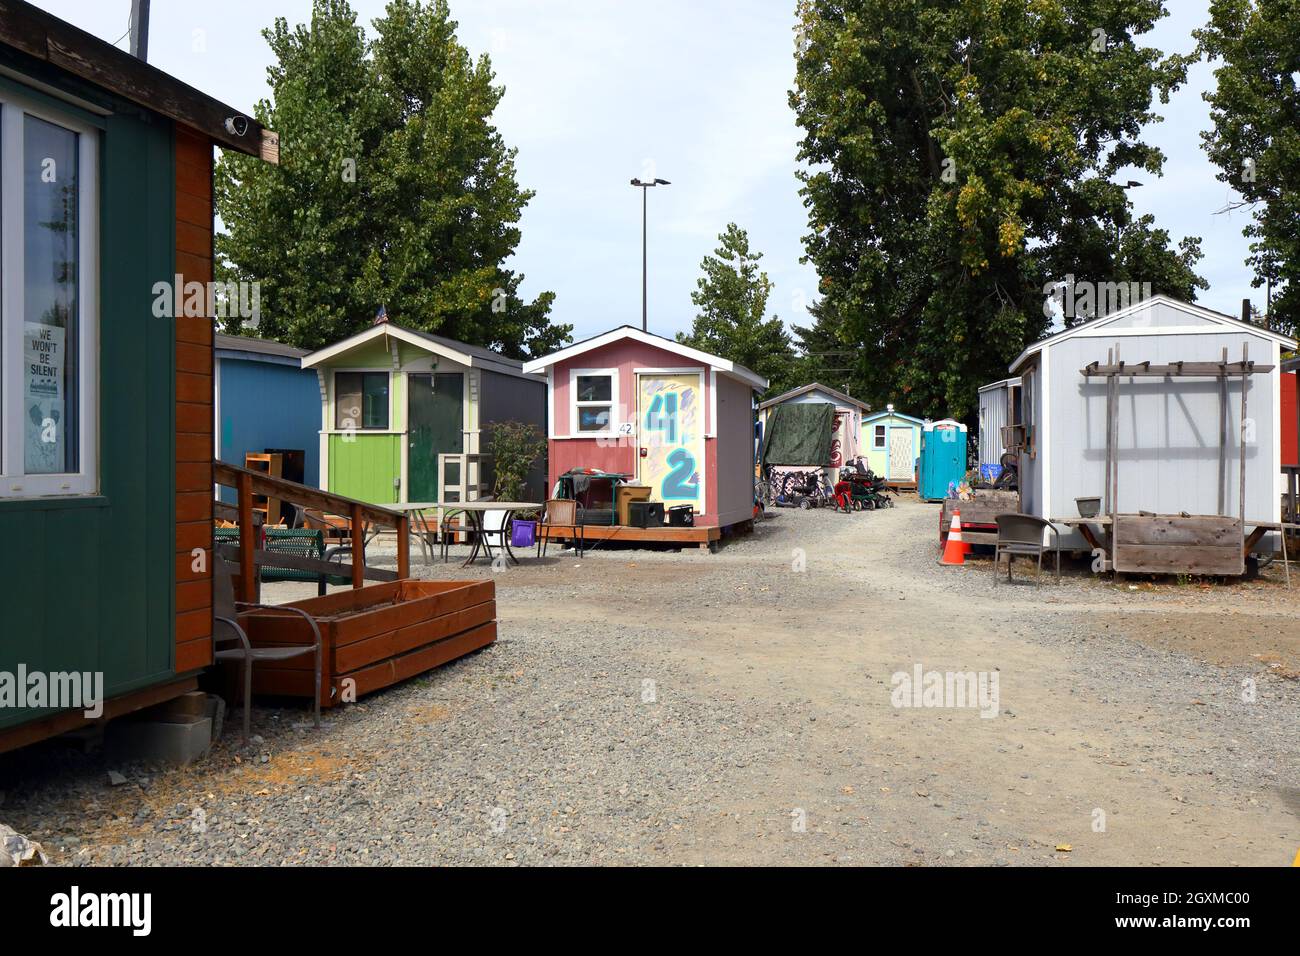 Ein kleines Hausdorf in Seattle. Tiny House Programme in Seattle und im ganzen Land sind wie konzipiert .... [Siehe zusätzliche Informationen für die vollständige Beschriftung] Stockfoto